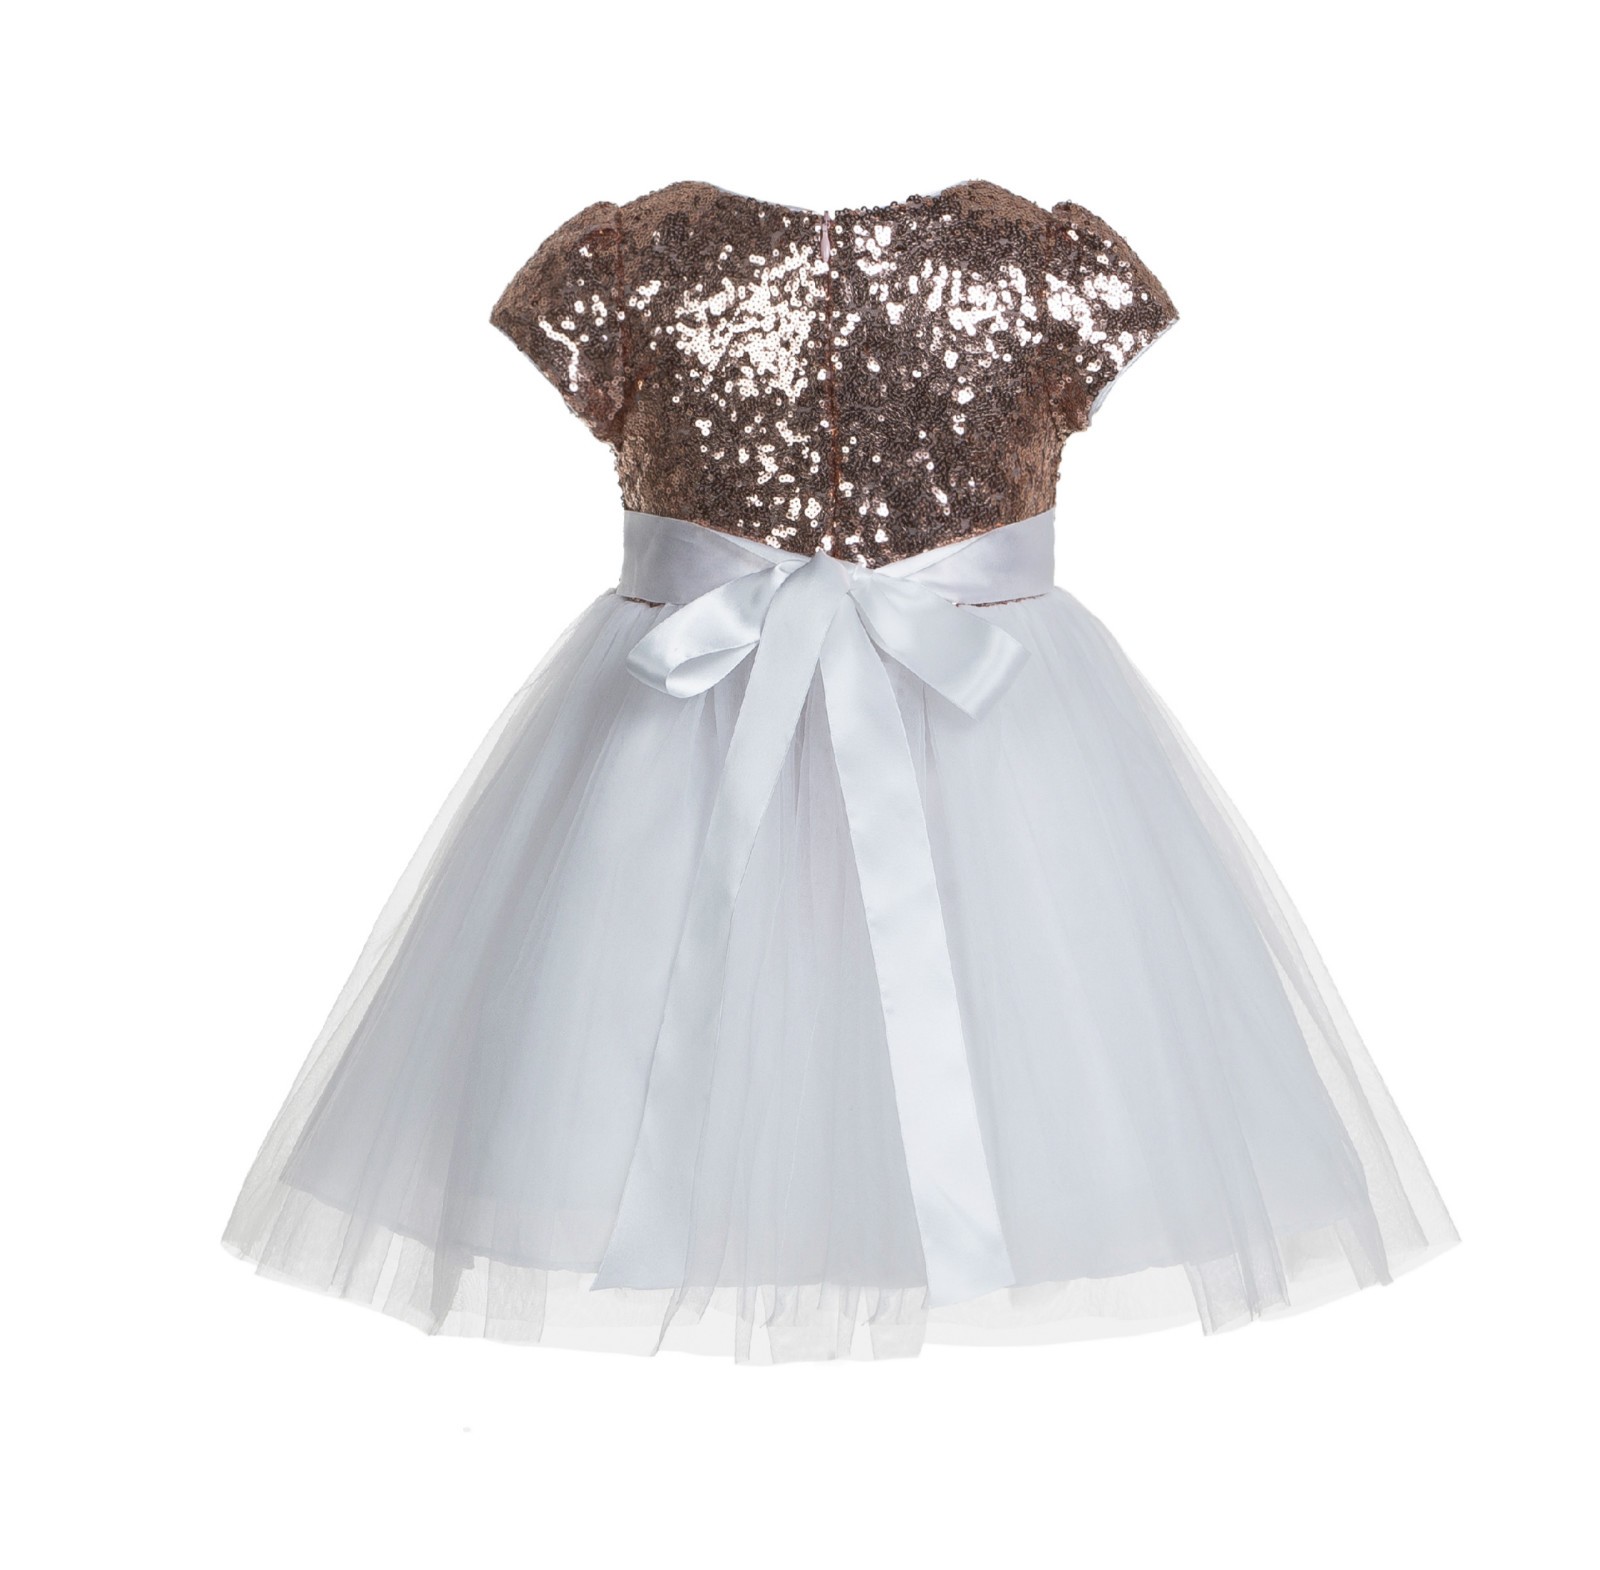 Rose Gold / White Cap Sleeves Sequin Flower Girl Dress 175